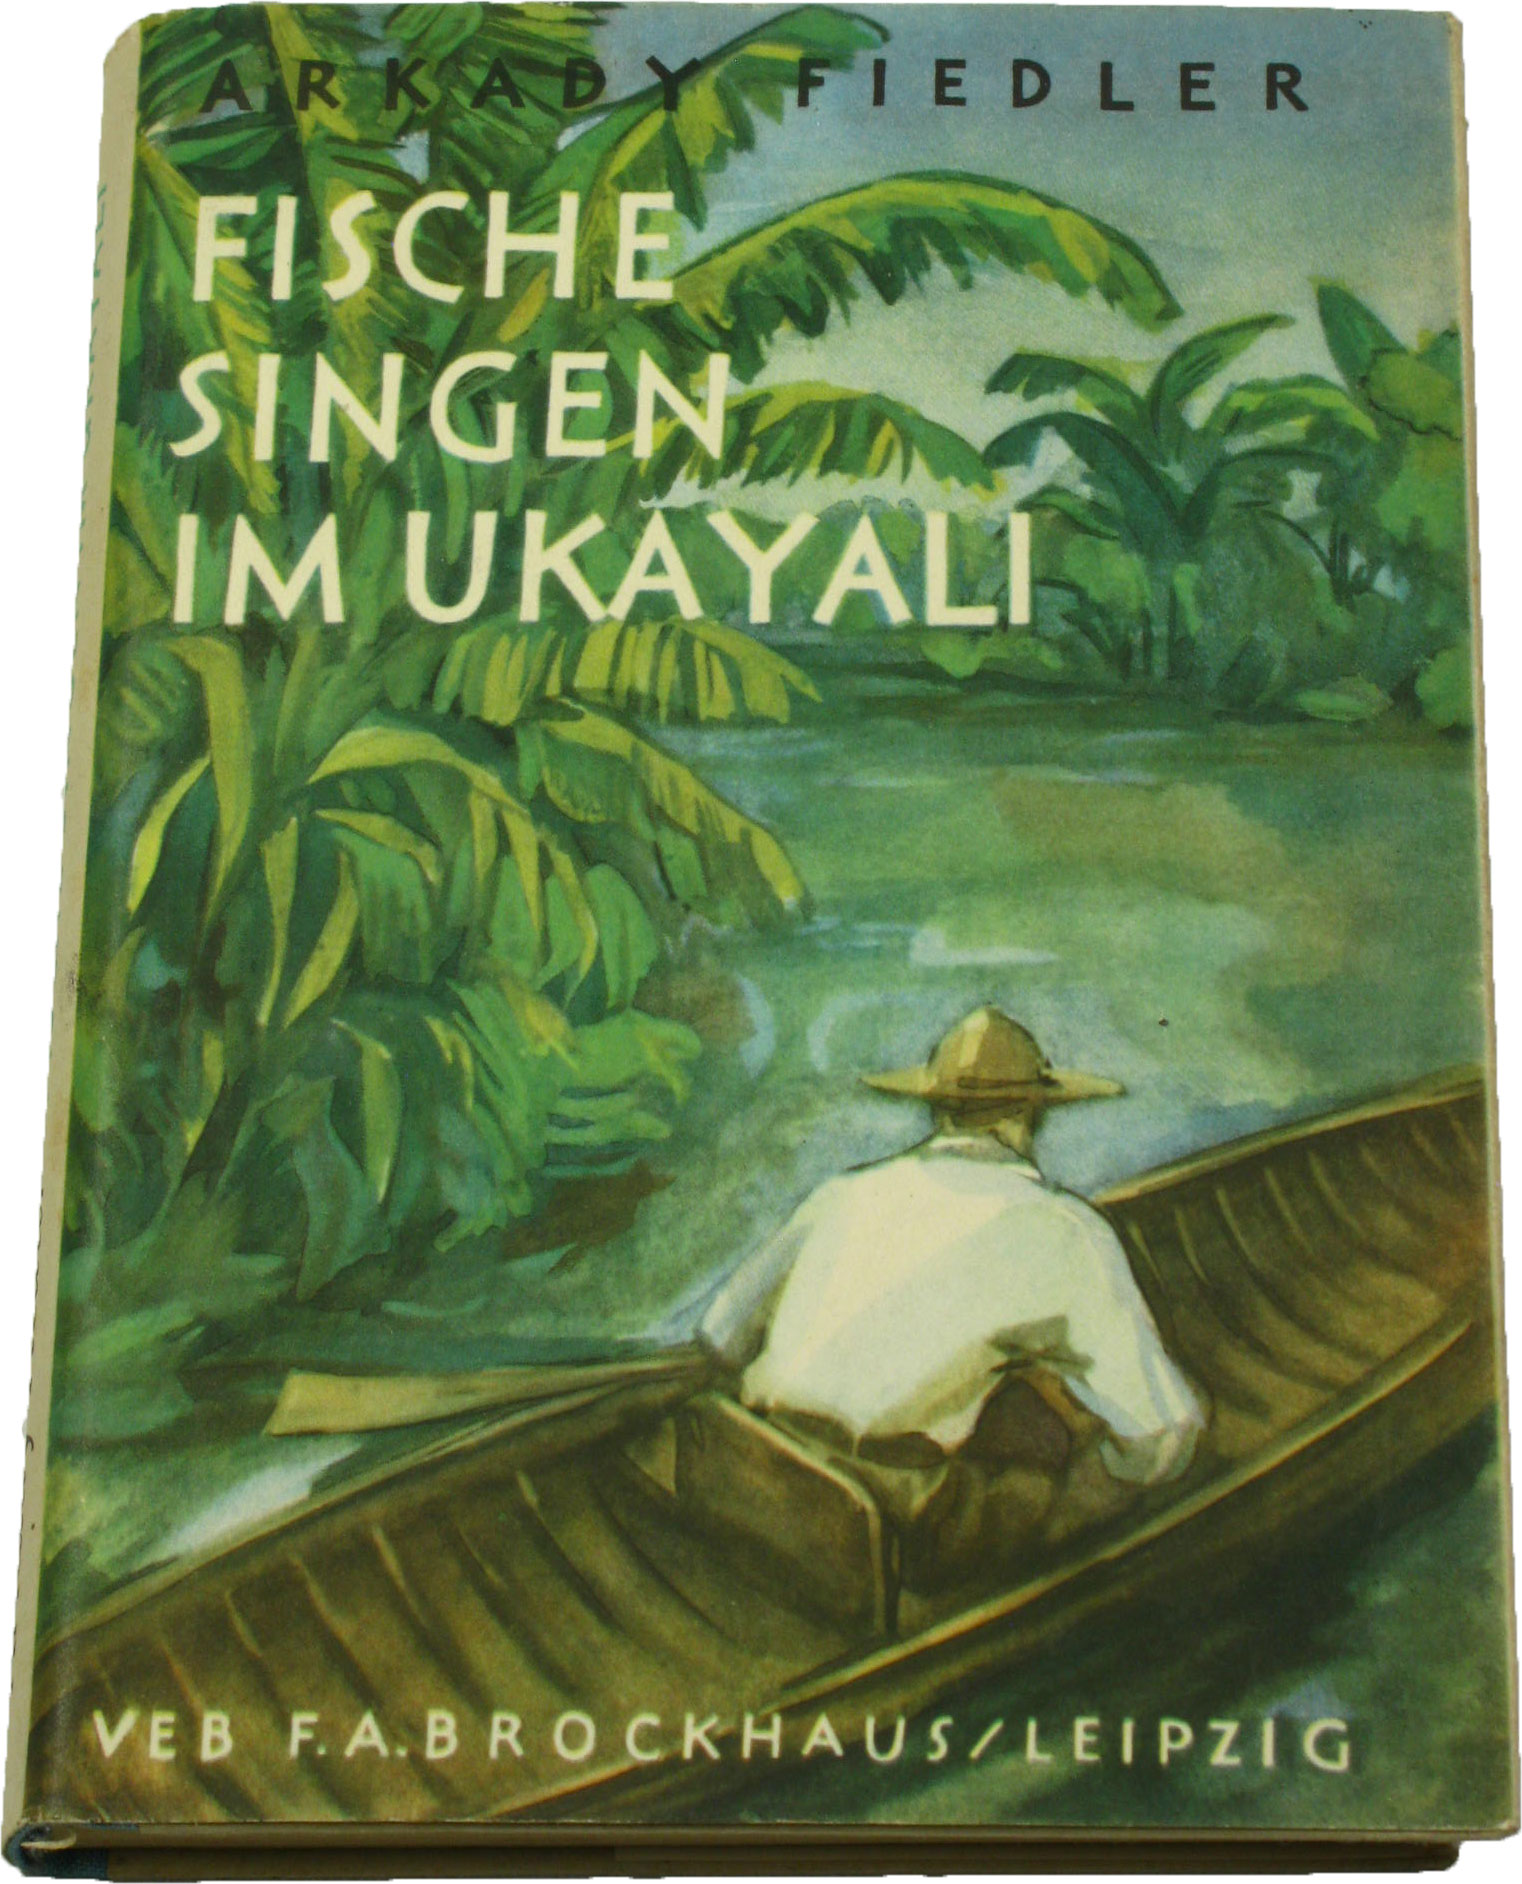 Fiedler, Arkady:  Fische singen im Ukayali 